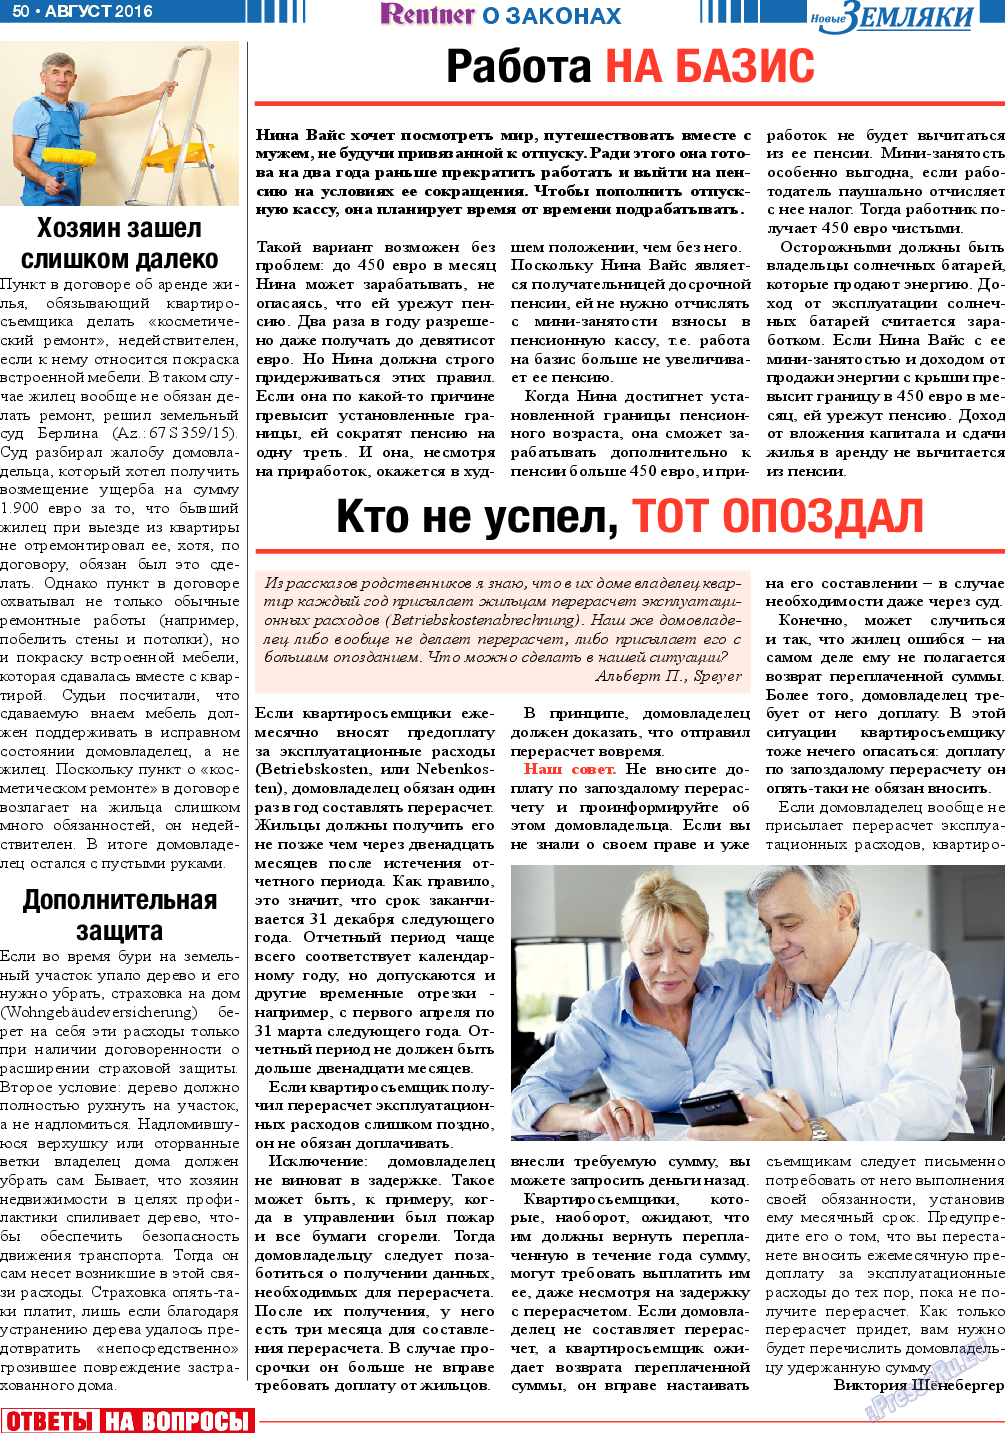 Новые Земляки, газета. 2016 №8 стр.50